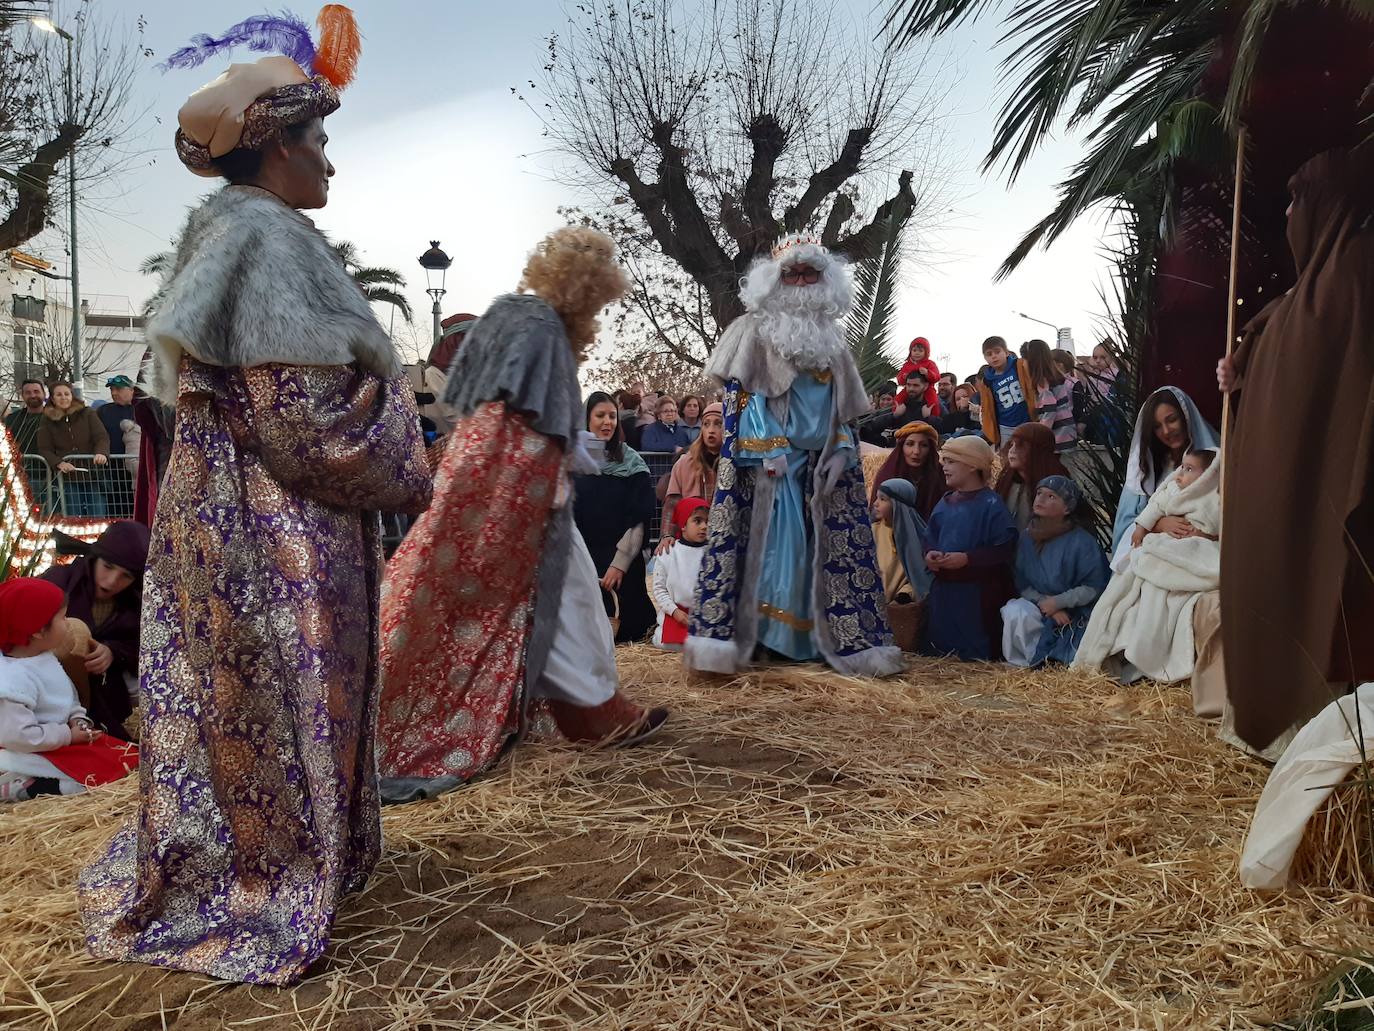 Imagen secundaria 2 - Tarde de ilusión en Casar de Cáceres por la llegada de los Reyes Magos